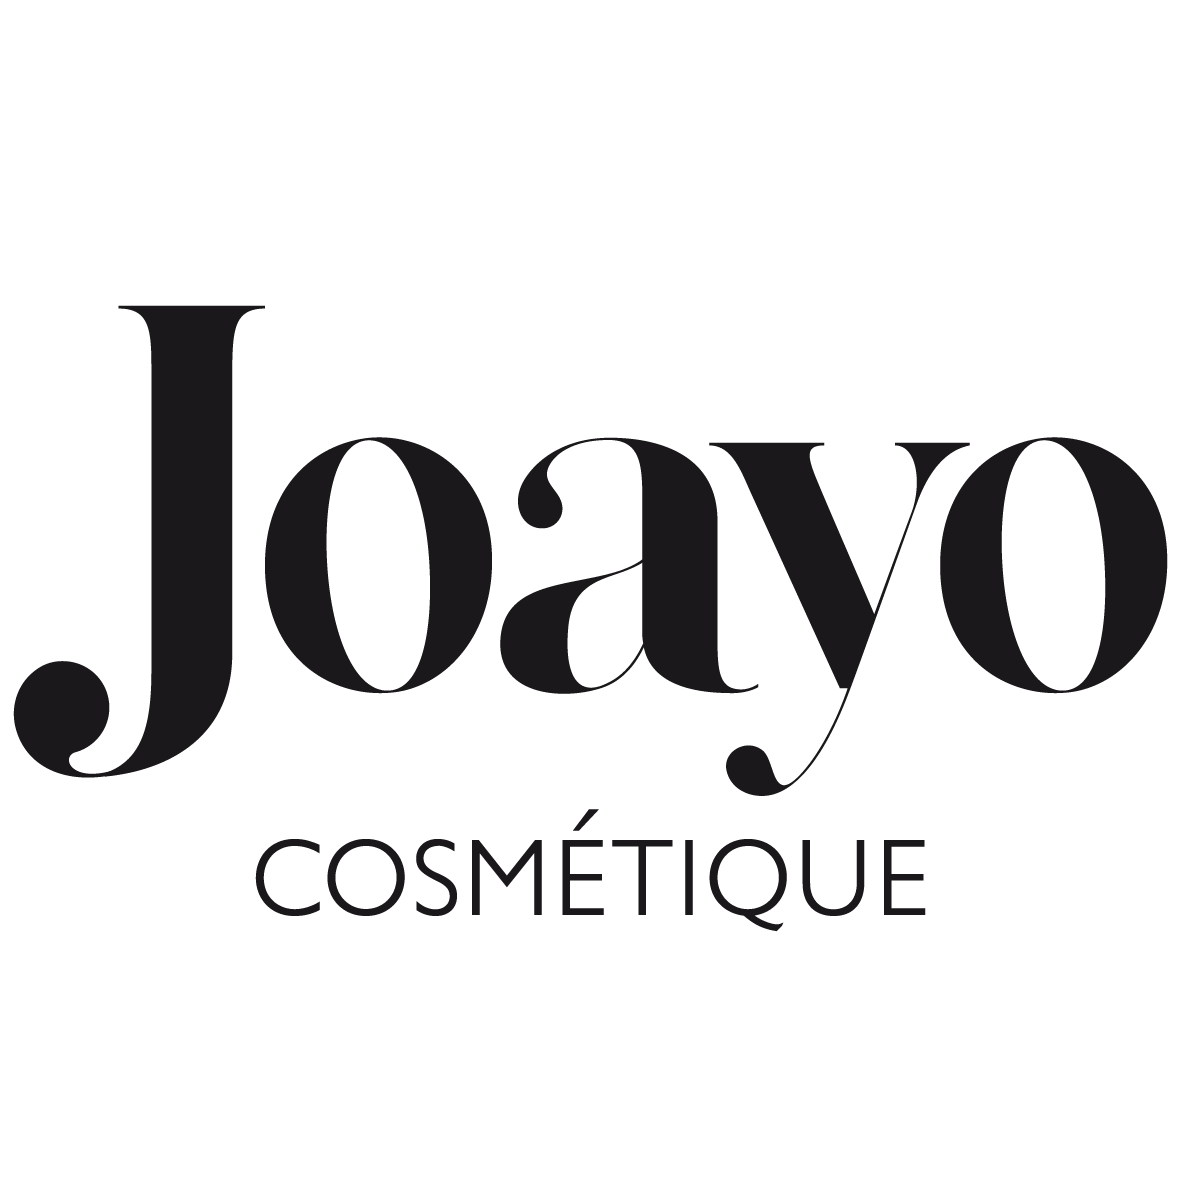 Joayo logo